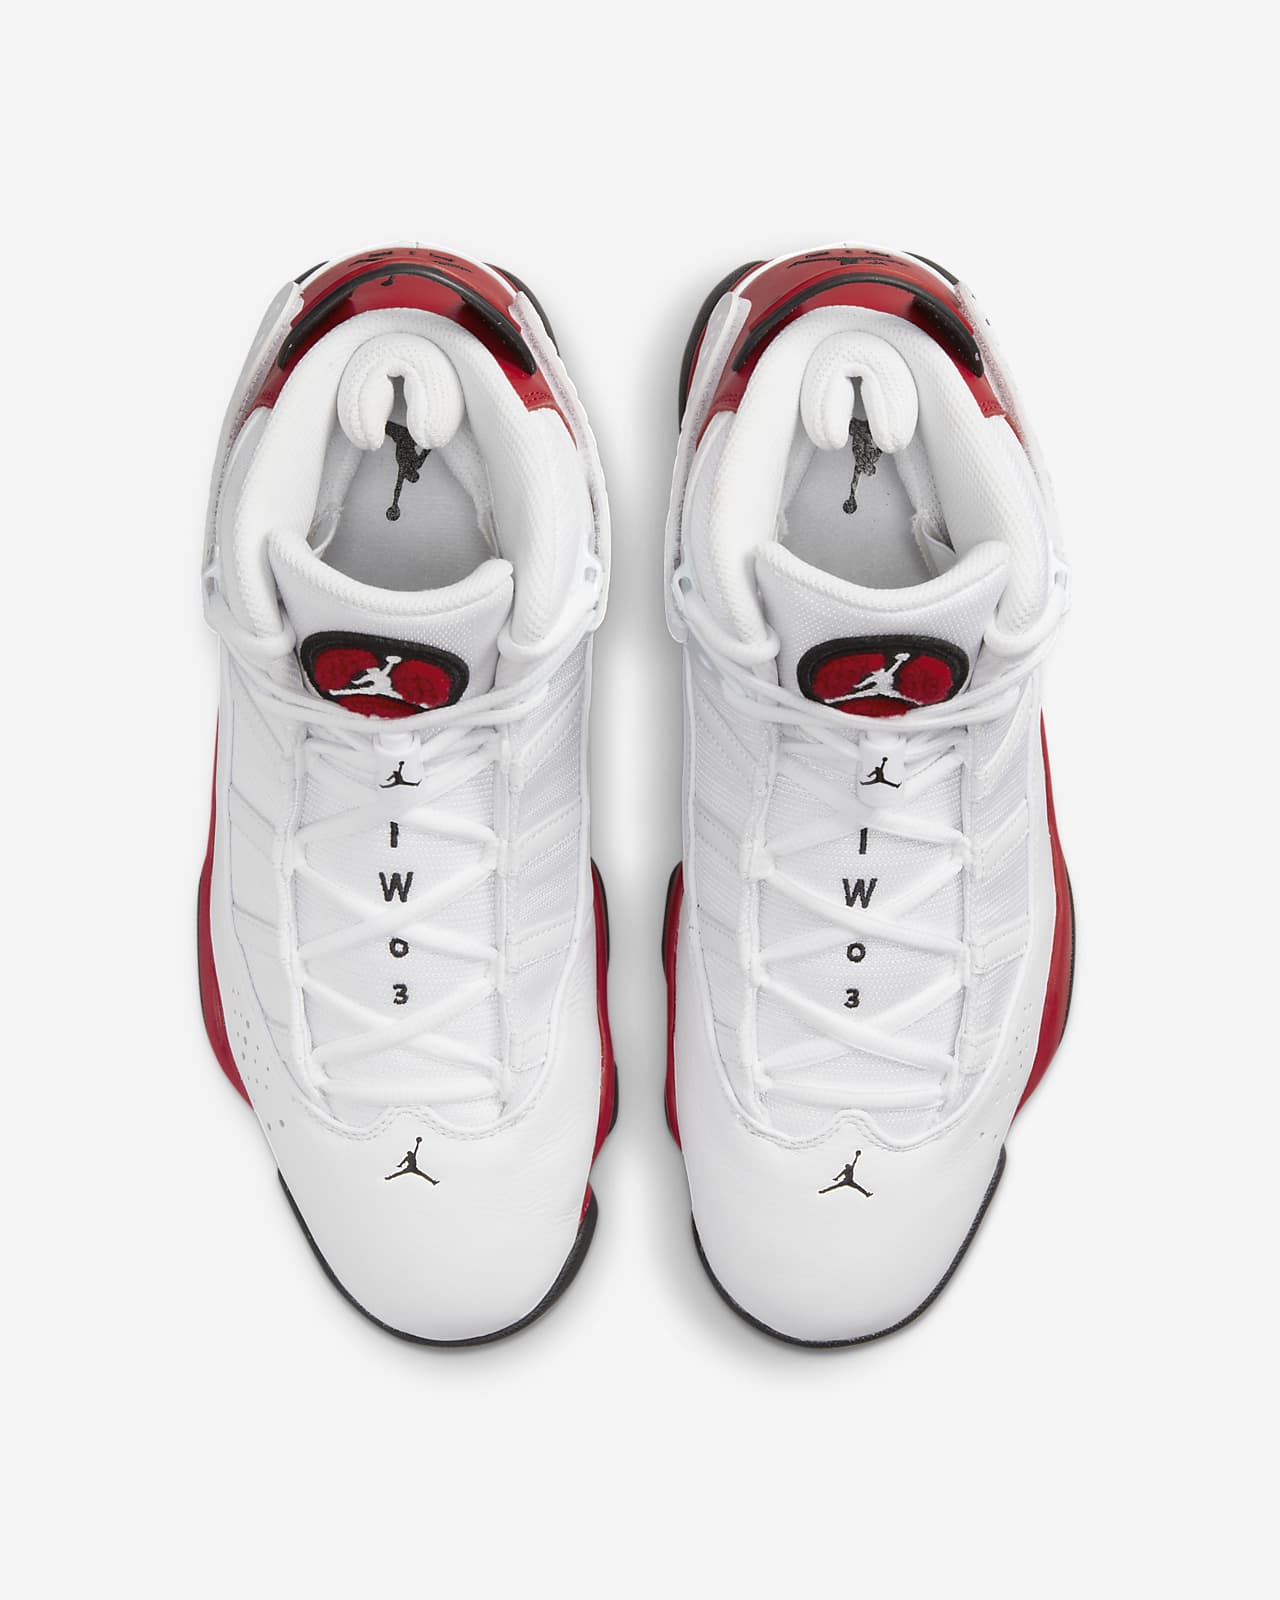 Jordan Rings Men's Shoes. Nike.com